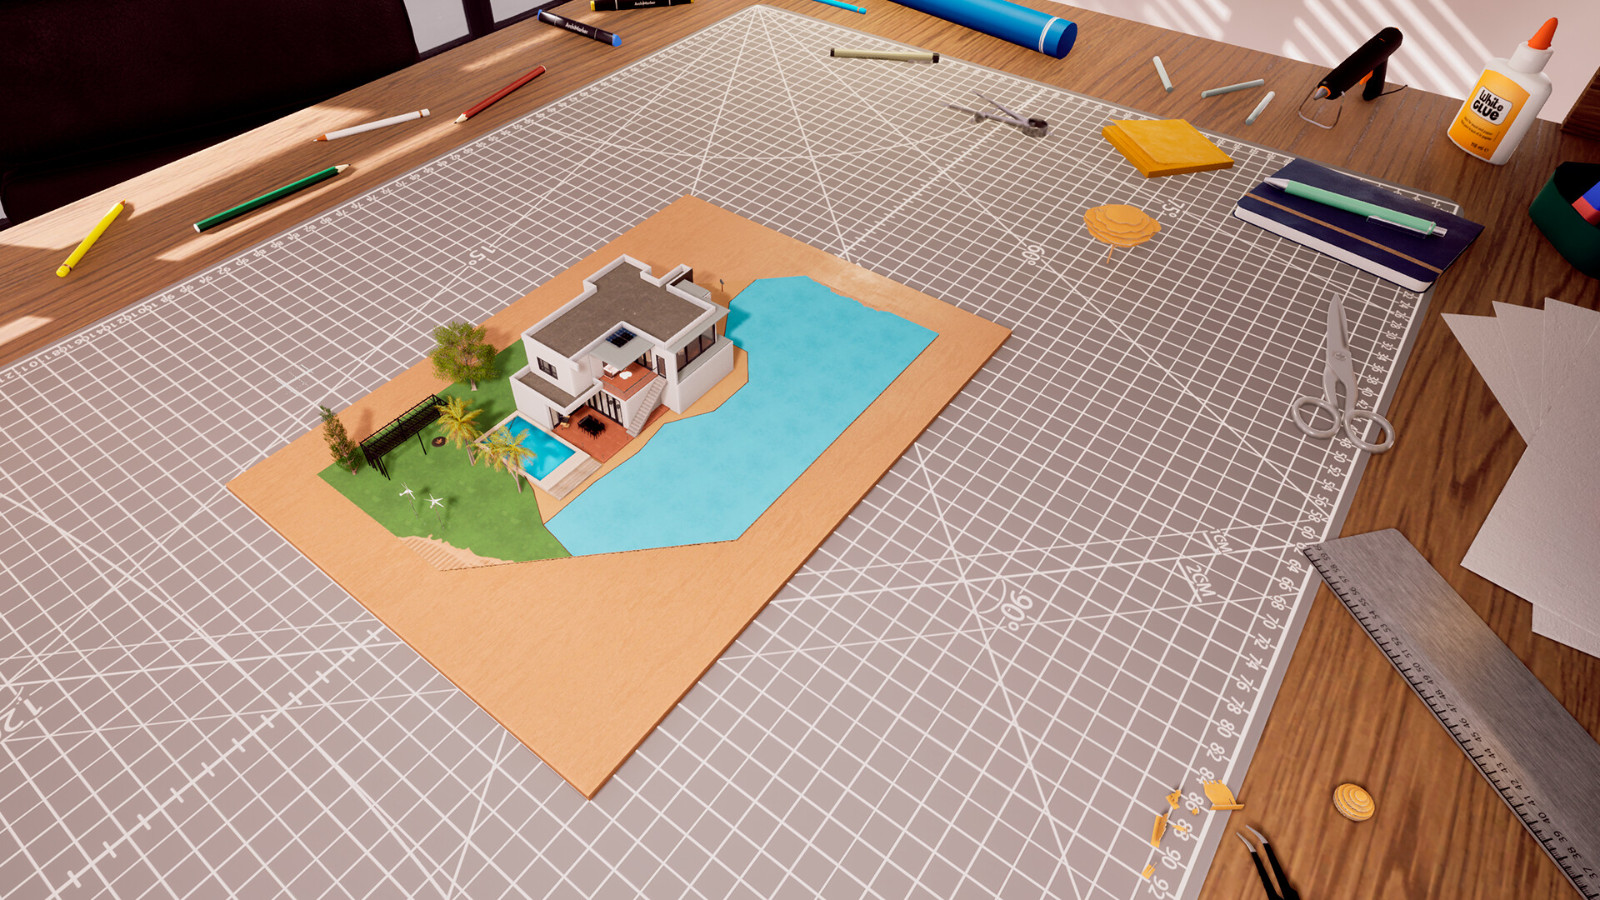 《建築師生活: 房屋設計模擬》Steam頁面 明年發售